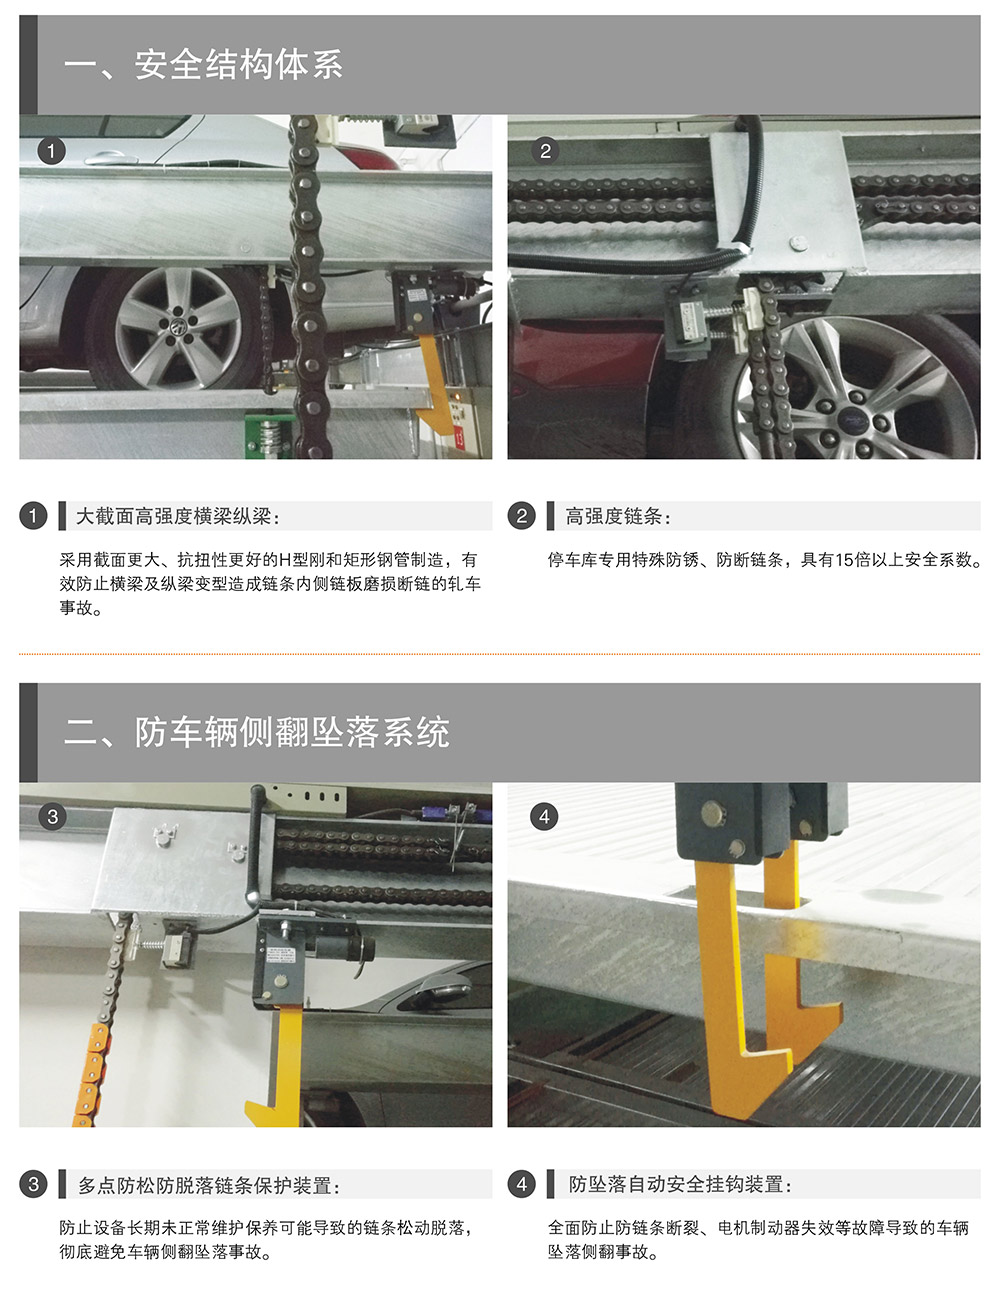 成都重庆PSH升降横移停车设备安全结构体系.jpg